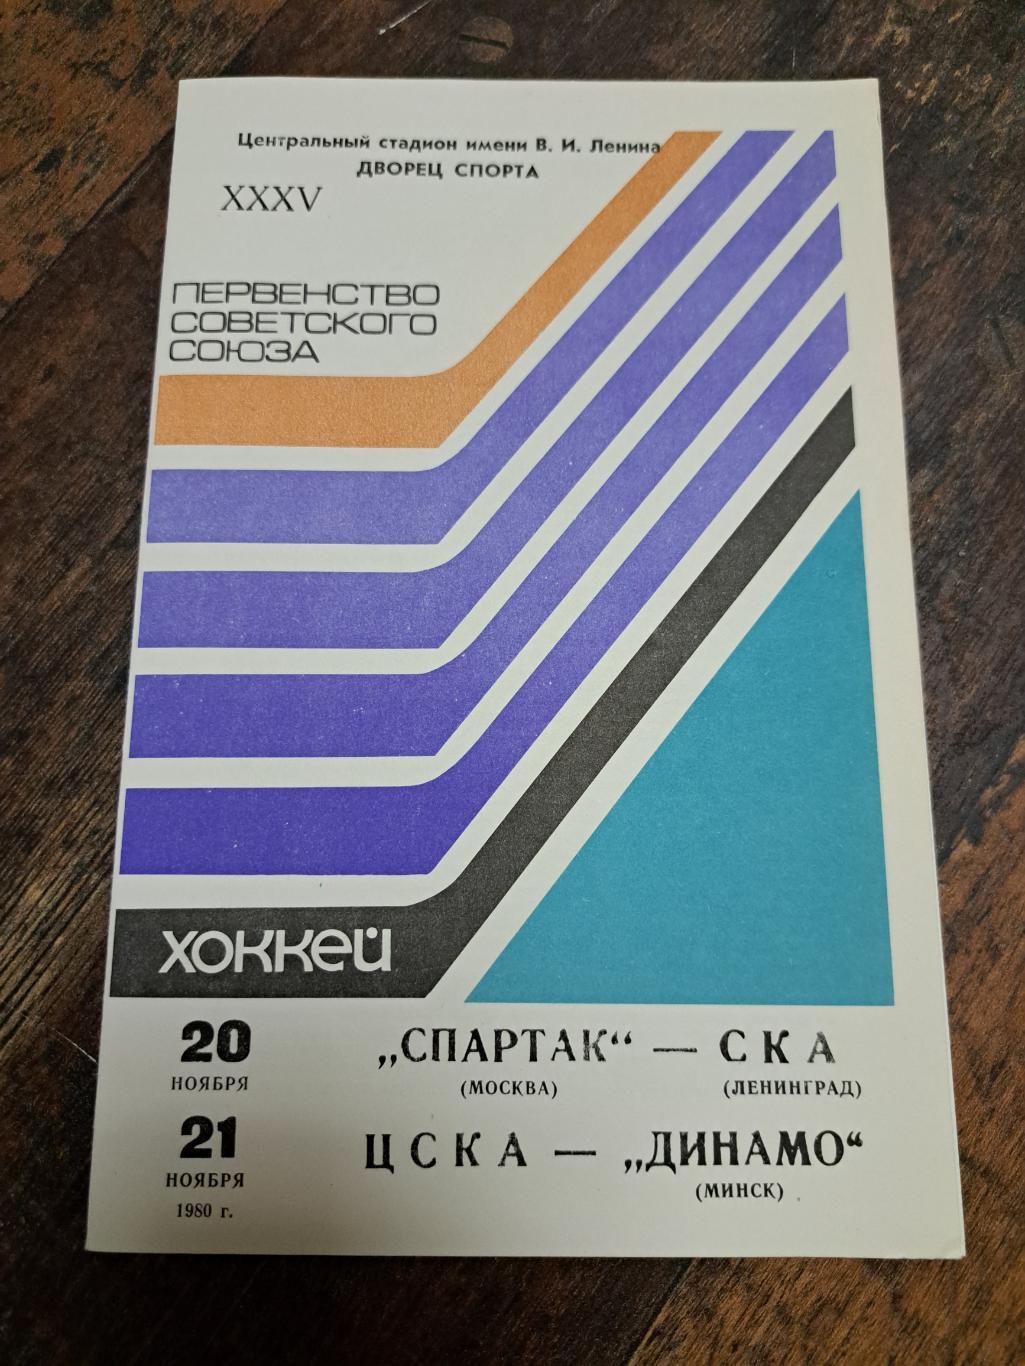 Спартак Москва-СКА,ЦСКА-Динамо Минск 20-21.11.1980 отличное состояние!